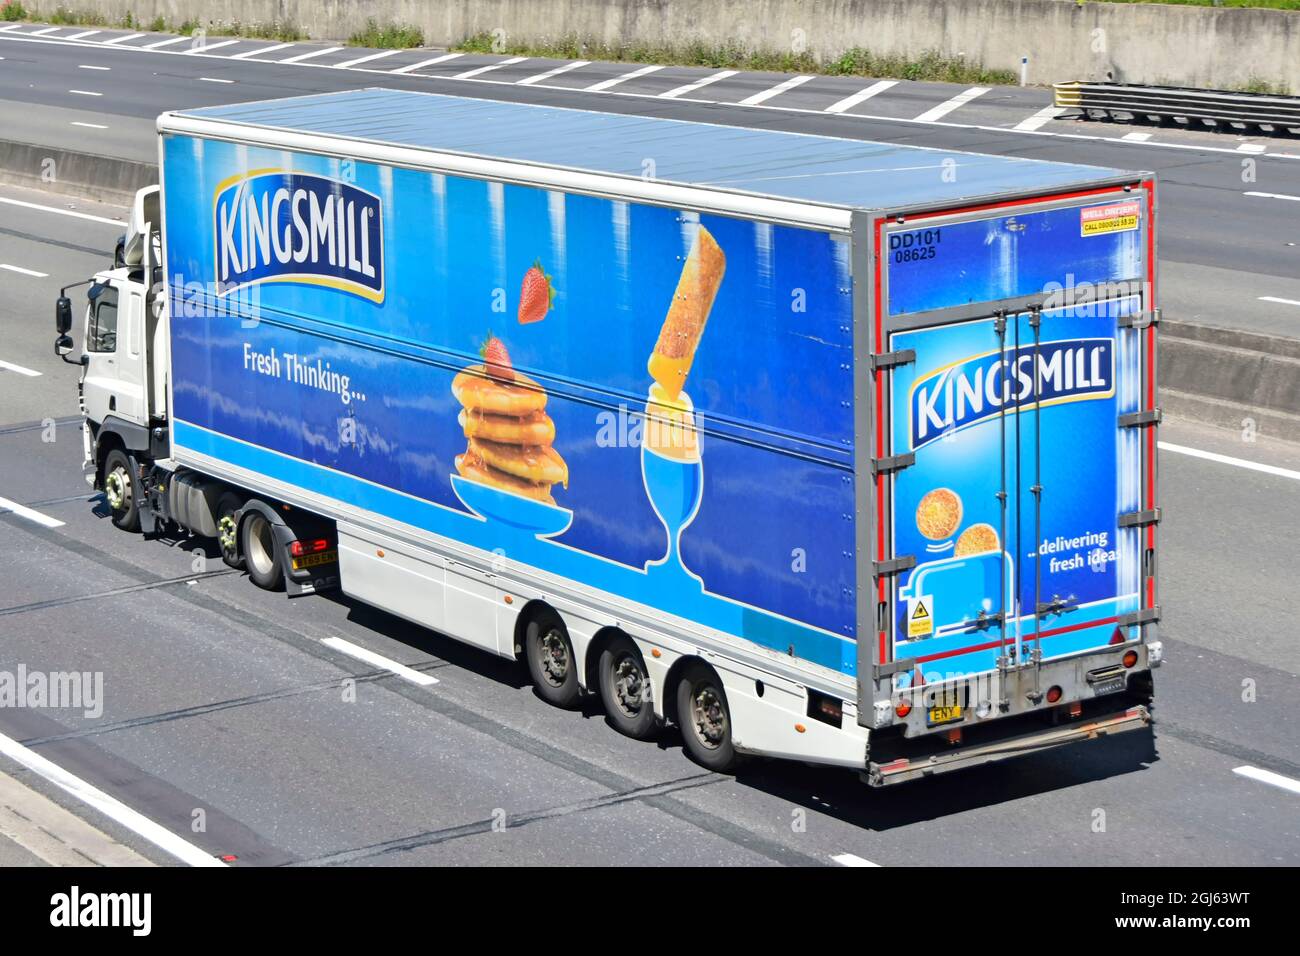 Werbung der Marke Kingsmill Bread von Associated British Foods, Seite- und Rückansicht eines Sattelaufliegers hinter einem weißen LKW, der auf der britischen Autobahn fährt Stockfoto